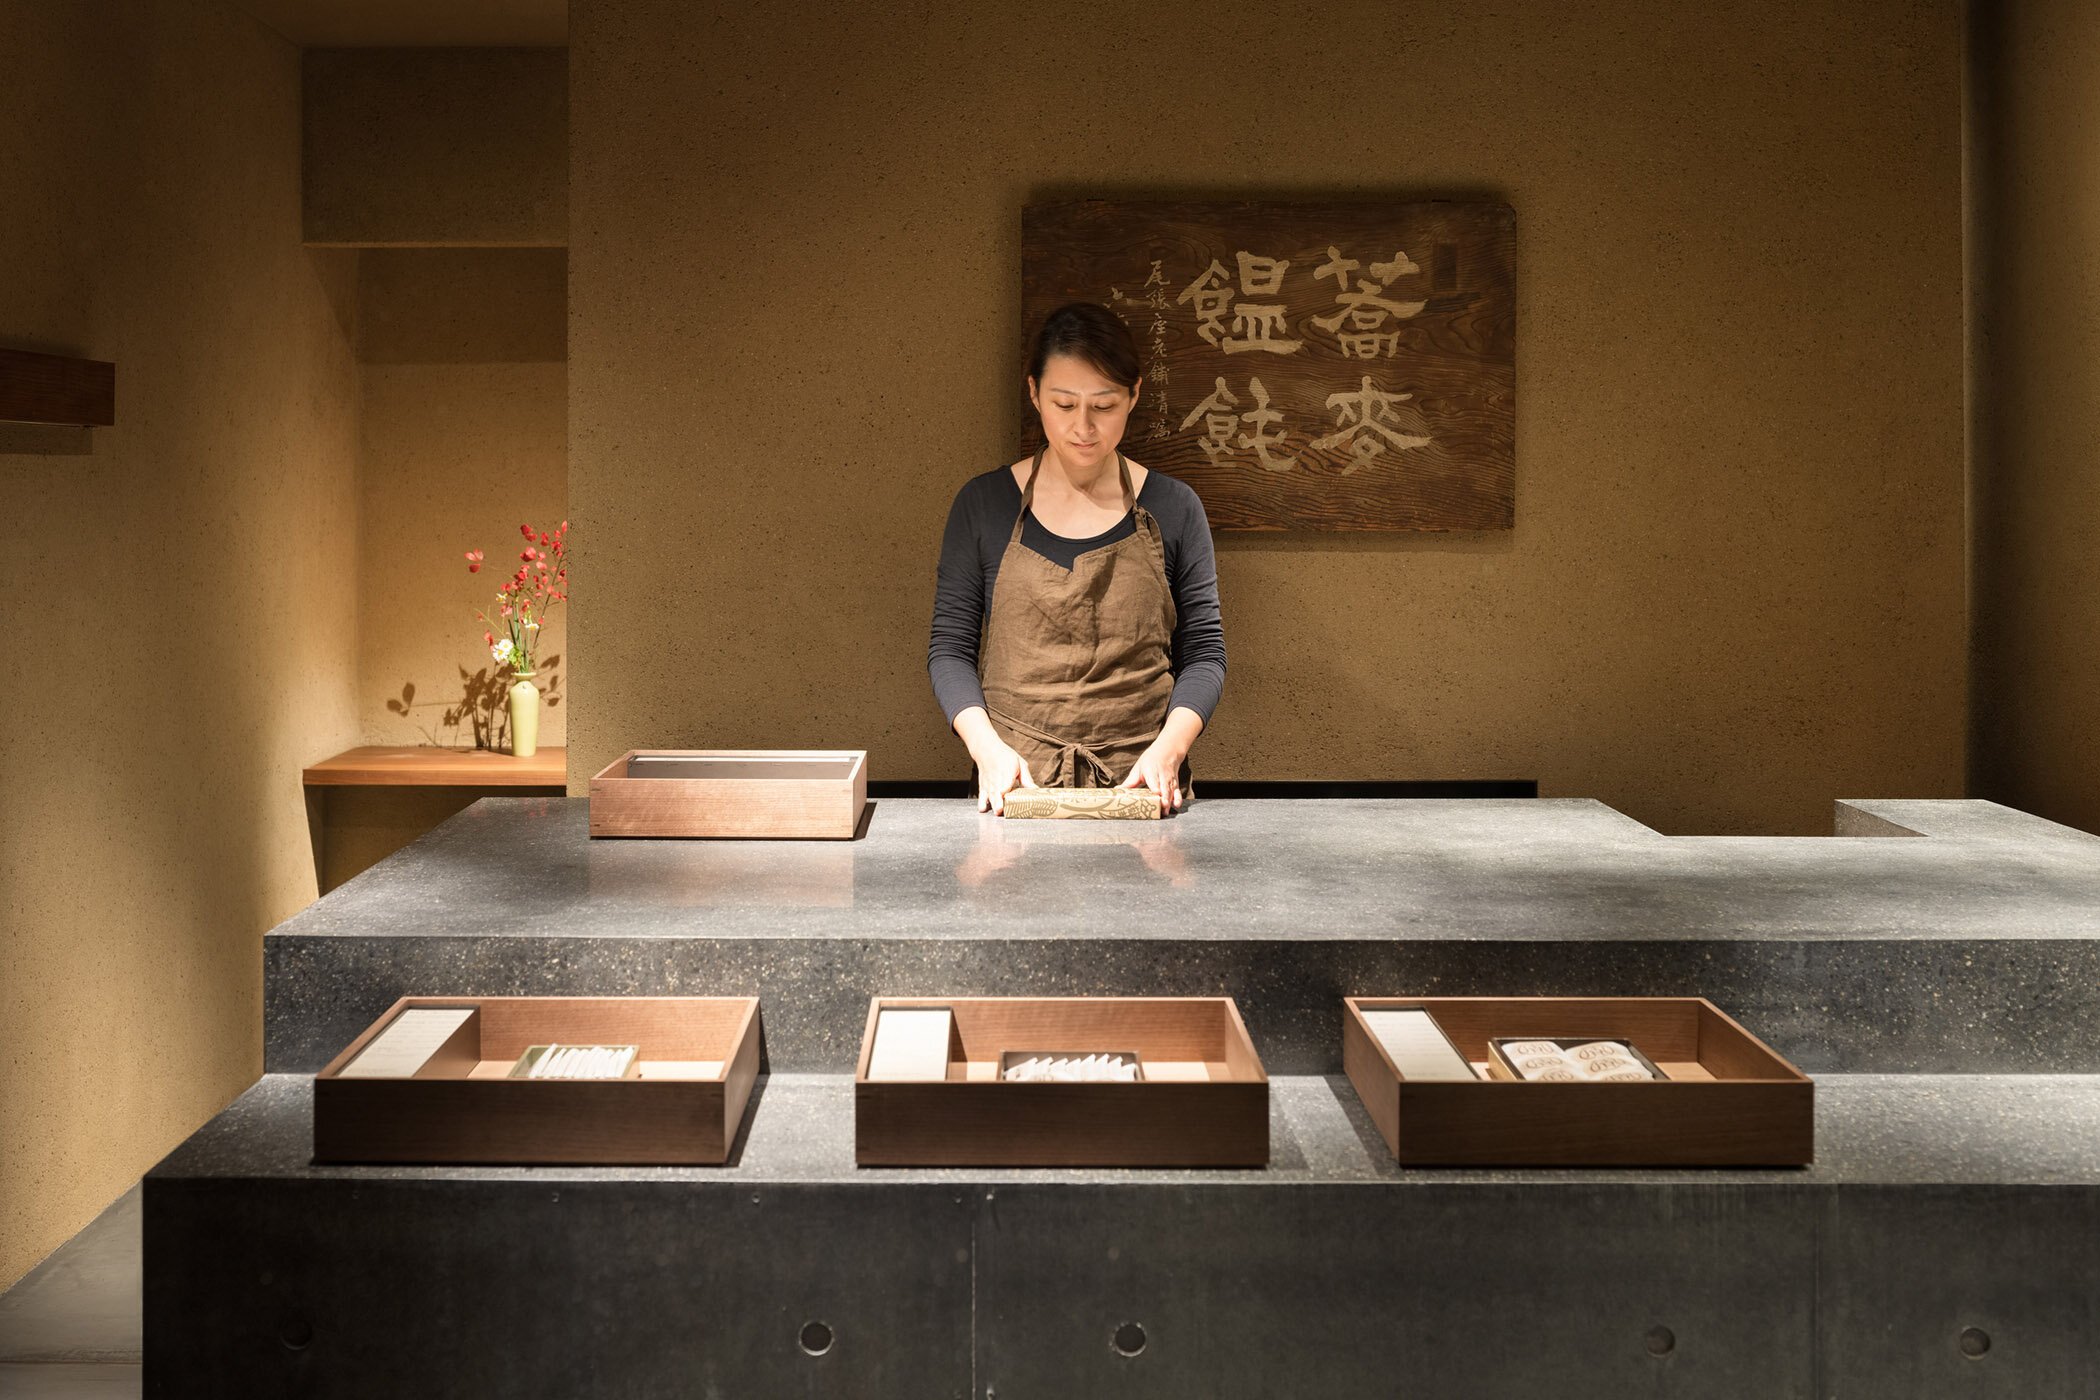  柳原照弘 Teruhiro Yanagihara Studioがインテリアデザインを手掛けた京都の尾張屋本店 菓子処。顧客と対話のできるカウンターを設けた 